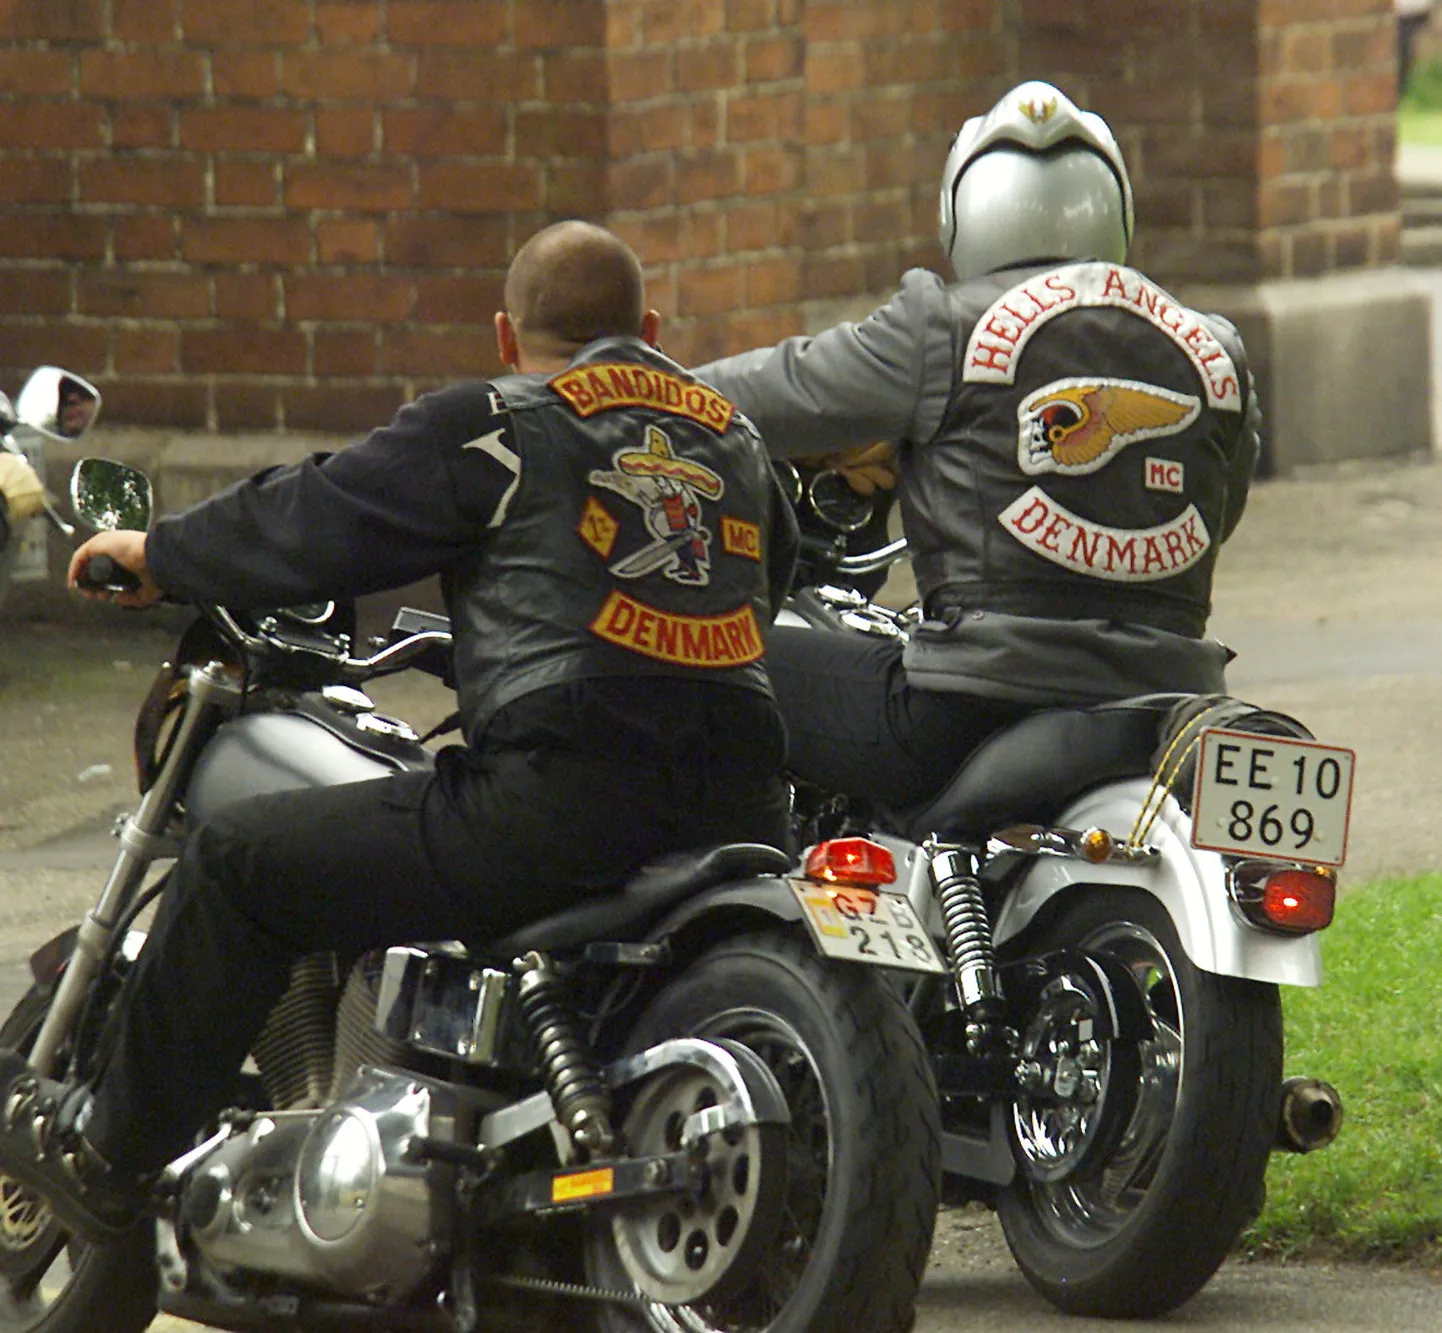 90ndatel vaenujalal olnud mootorratturitest moodustatud jõukude Hells Angels ja Bandidos liikmed.